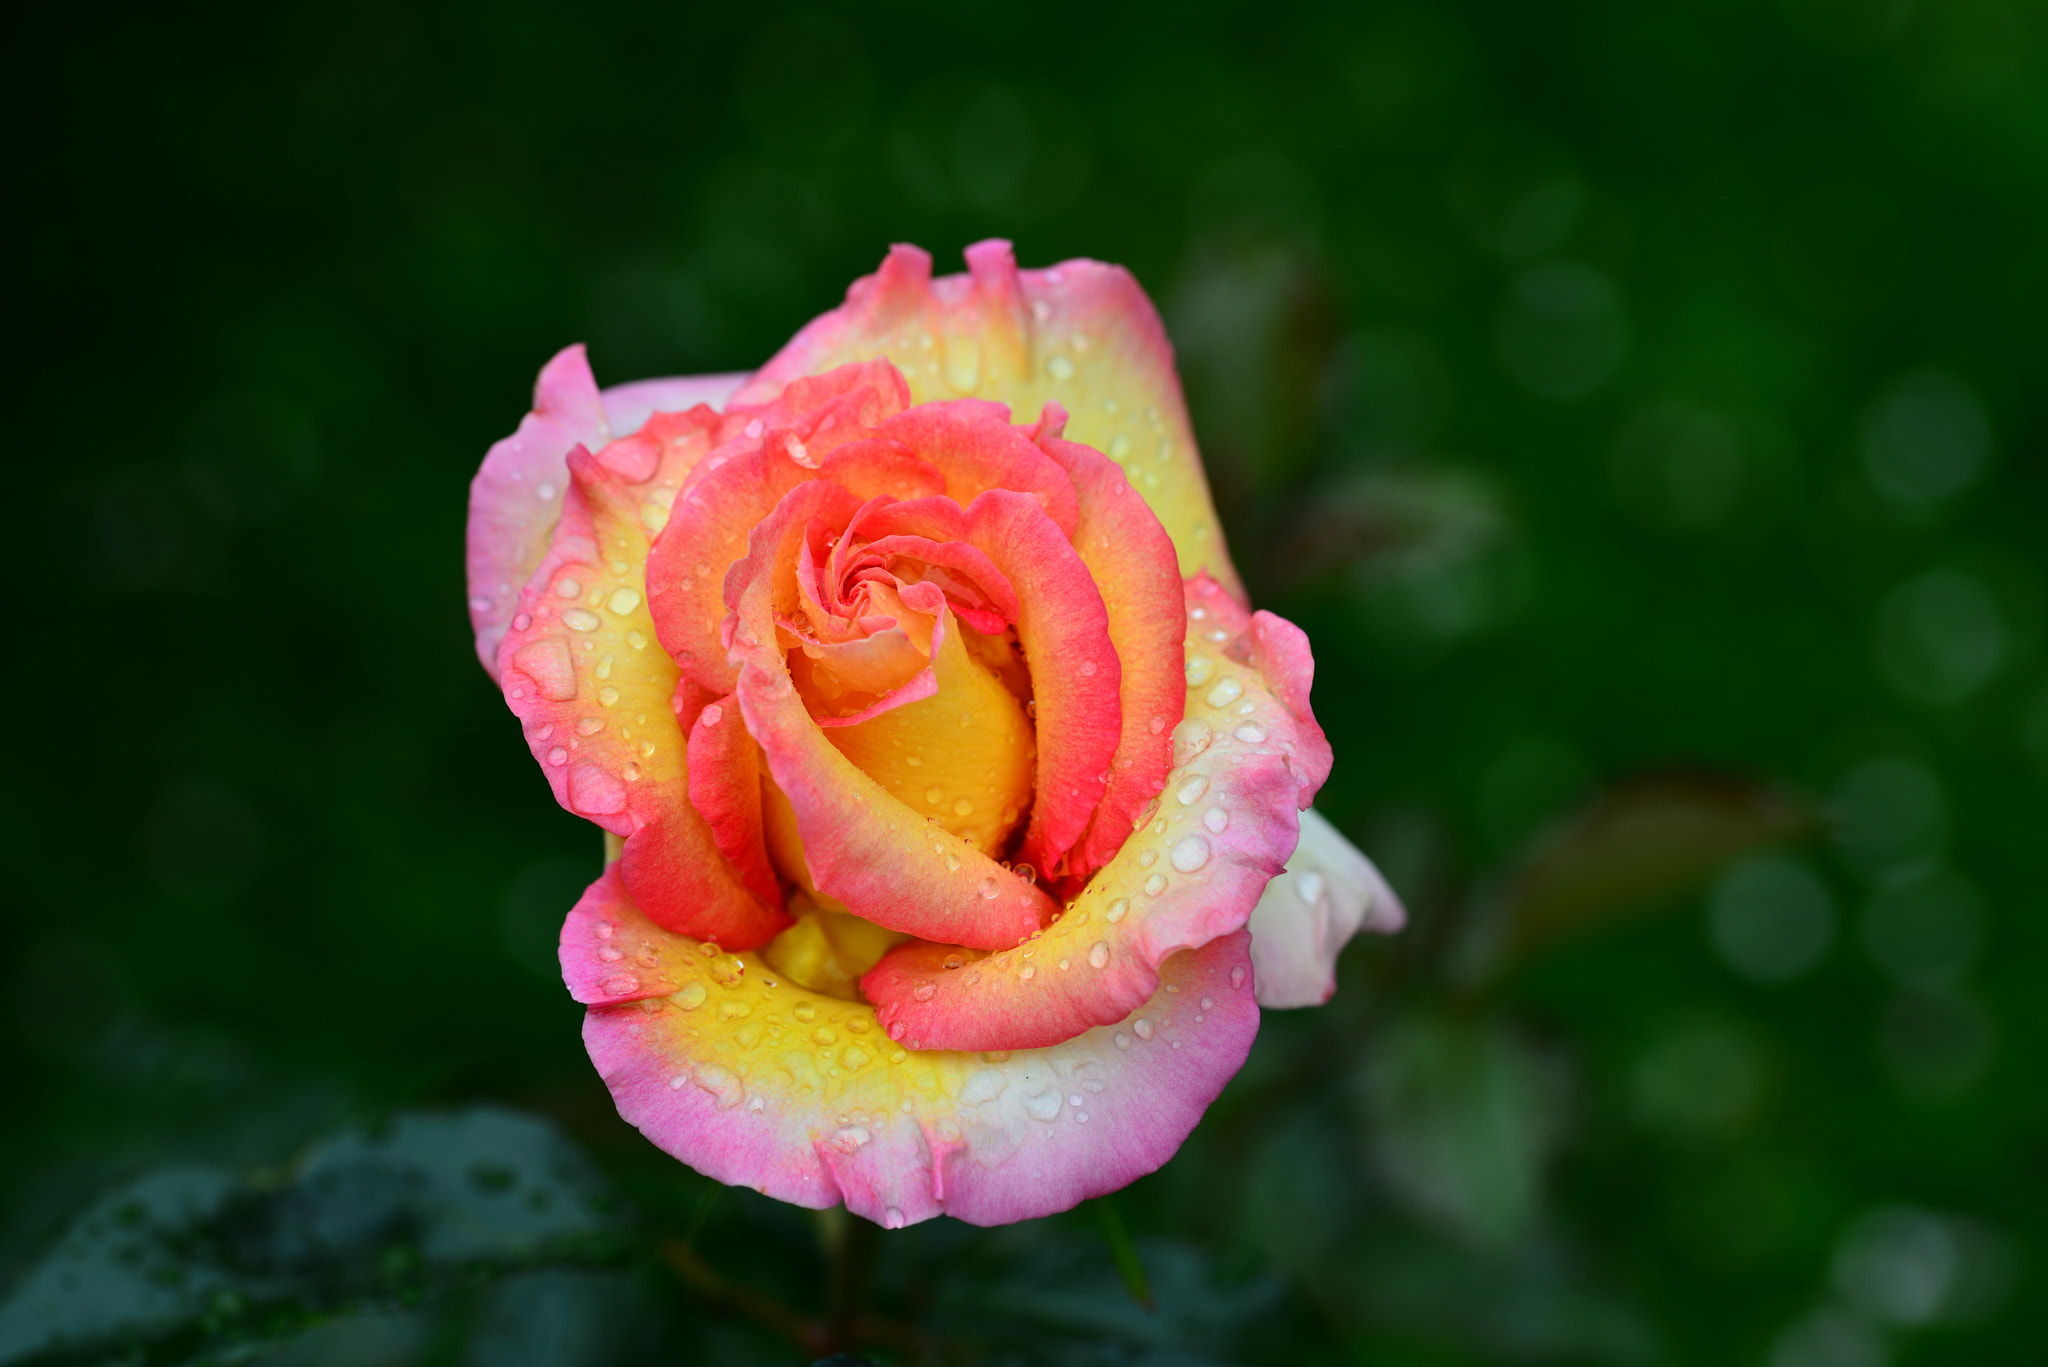 Nikon D800 + Sigma 105mm F2.8 EX DG OS HSM sample photo. Rose du jardin après la pluie photography